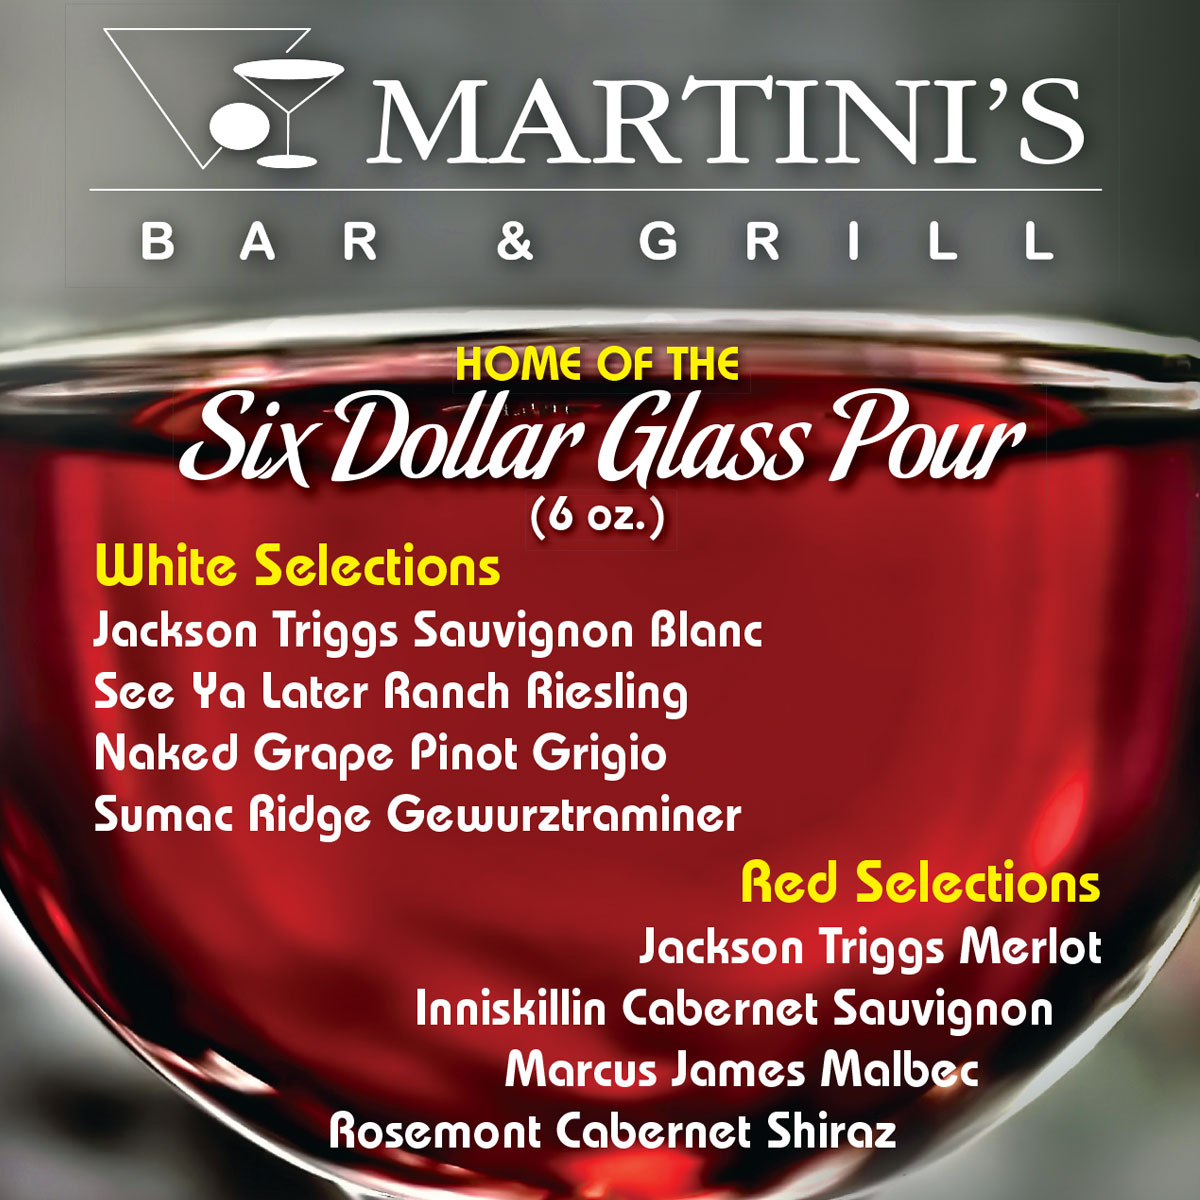 Martinis menu